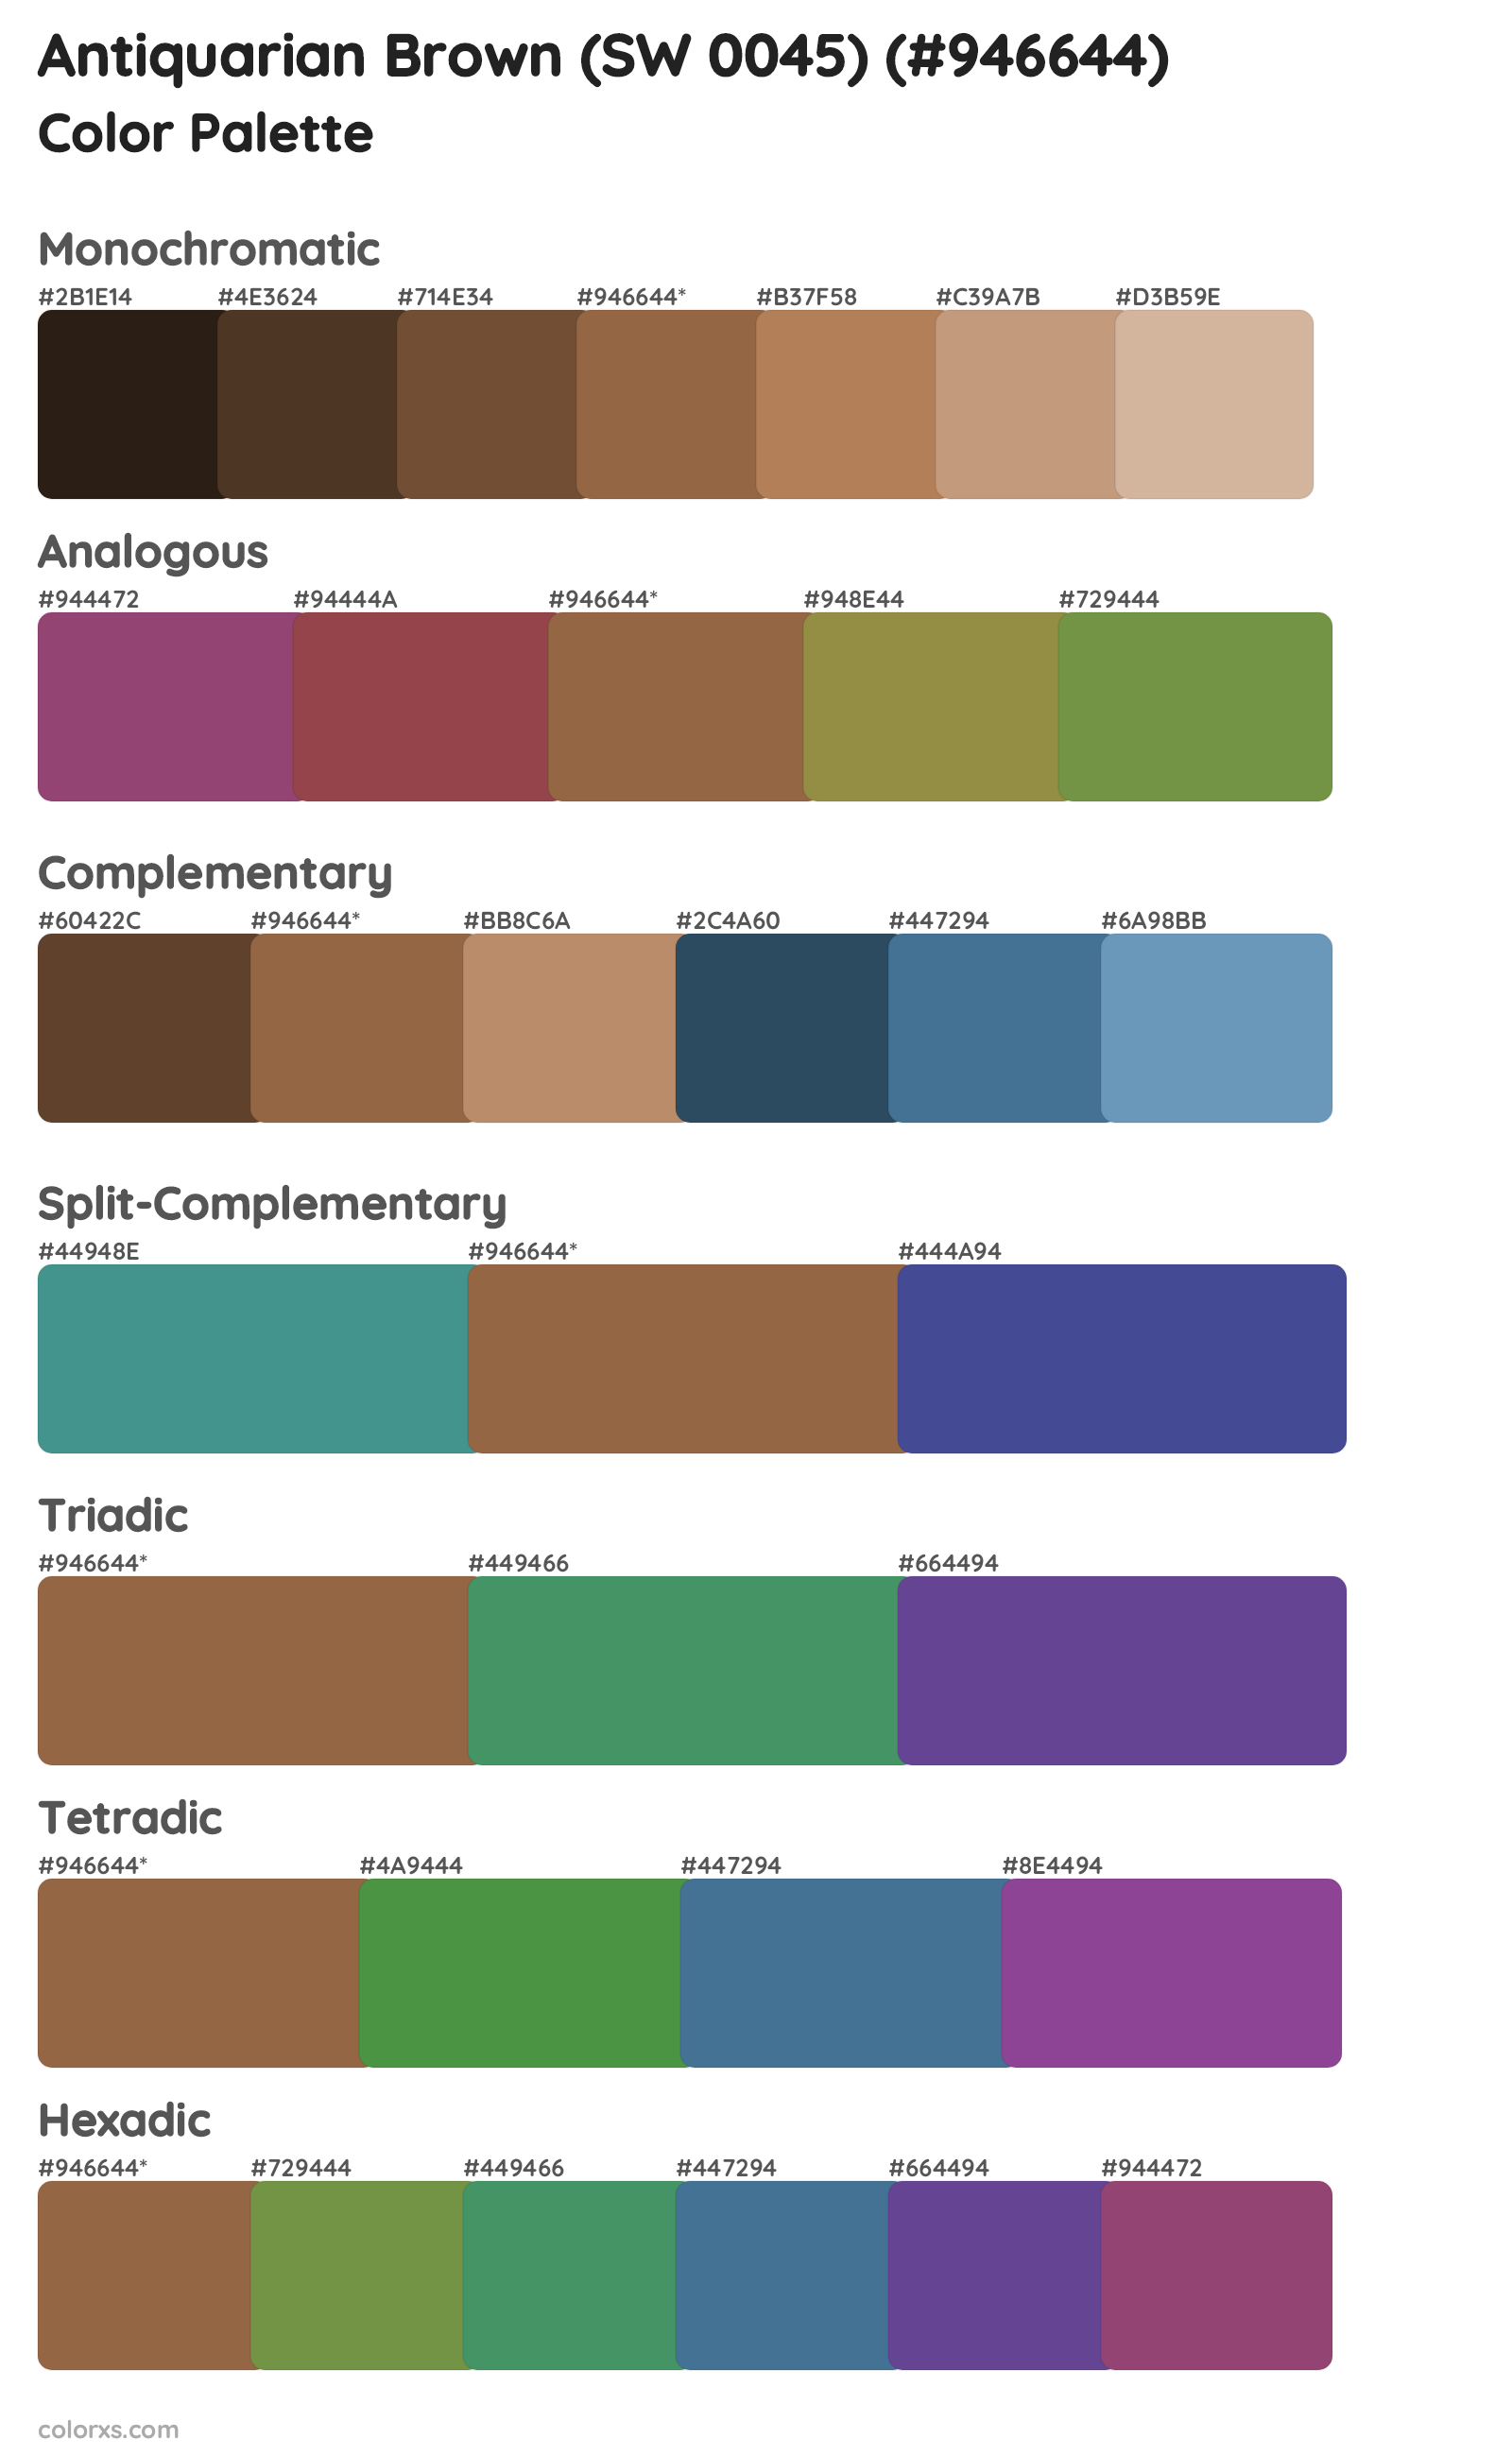 Antiquarian Brown (SW 0045) Color Scheme Palettes